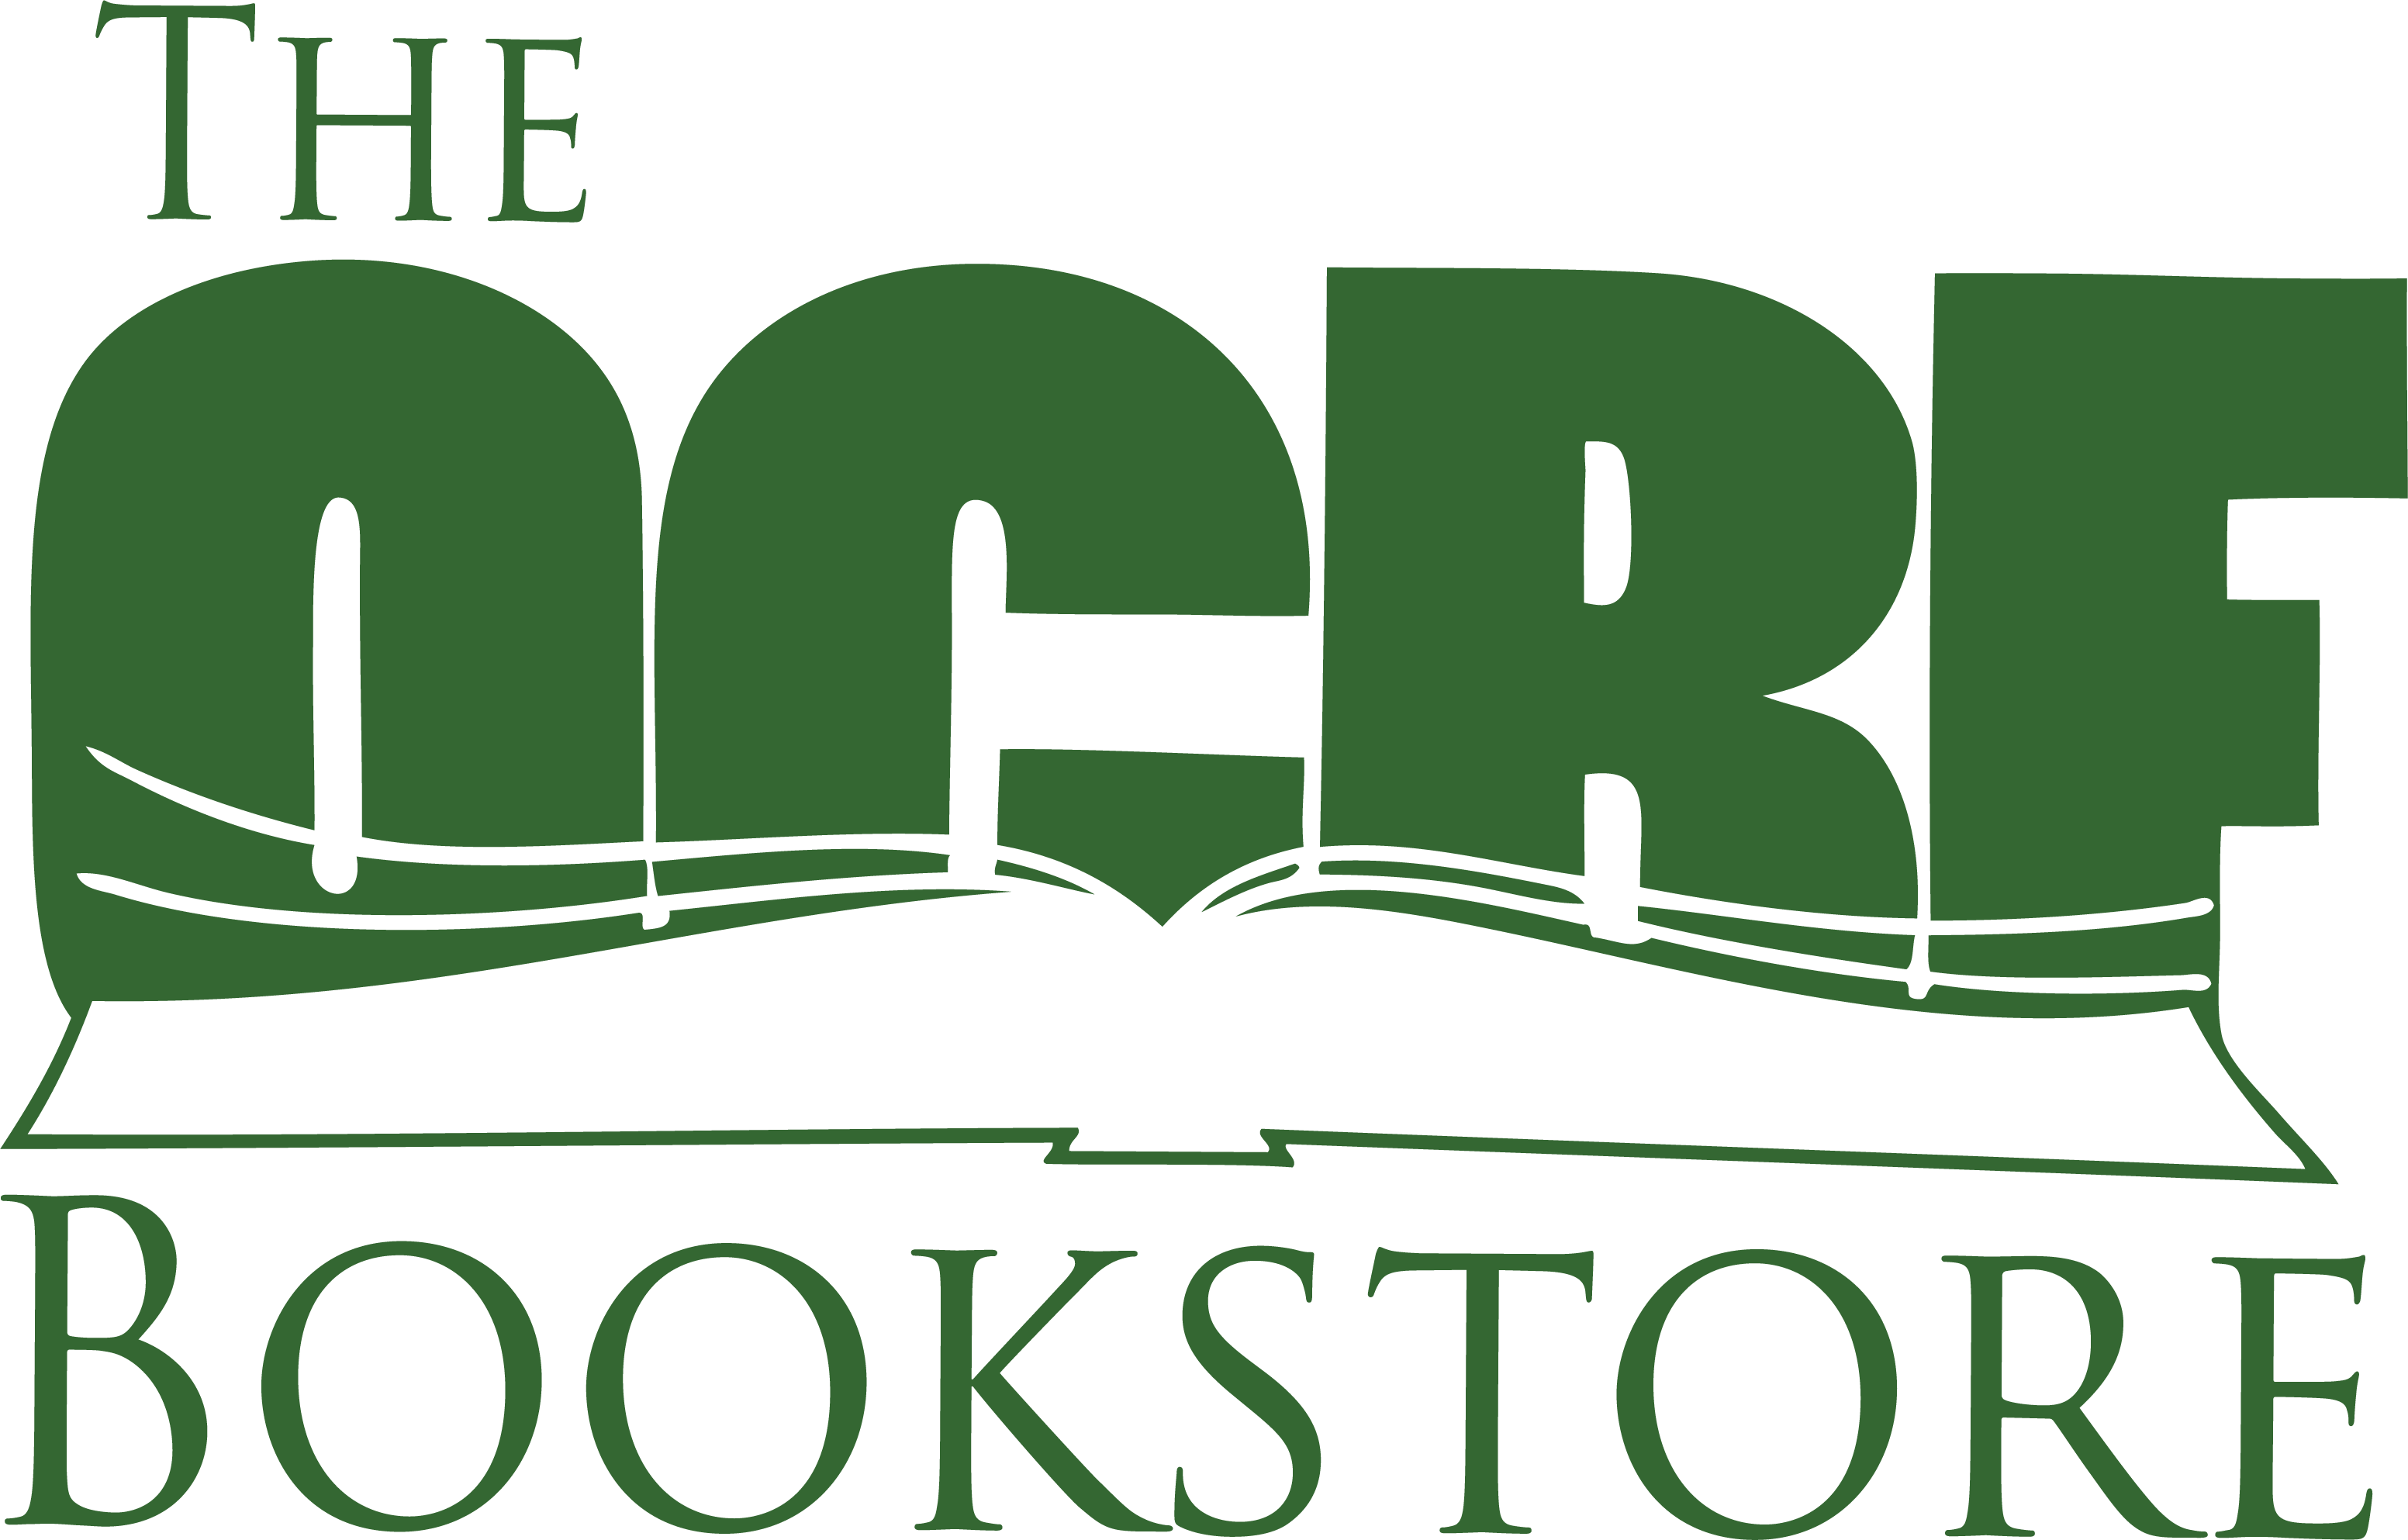 Oak Cliff Bible Fellowship Bookstore